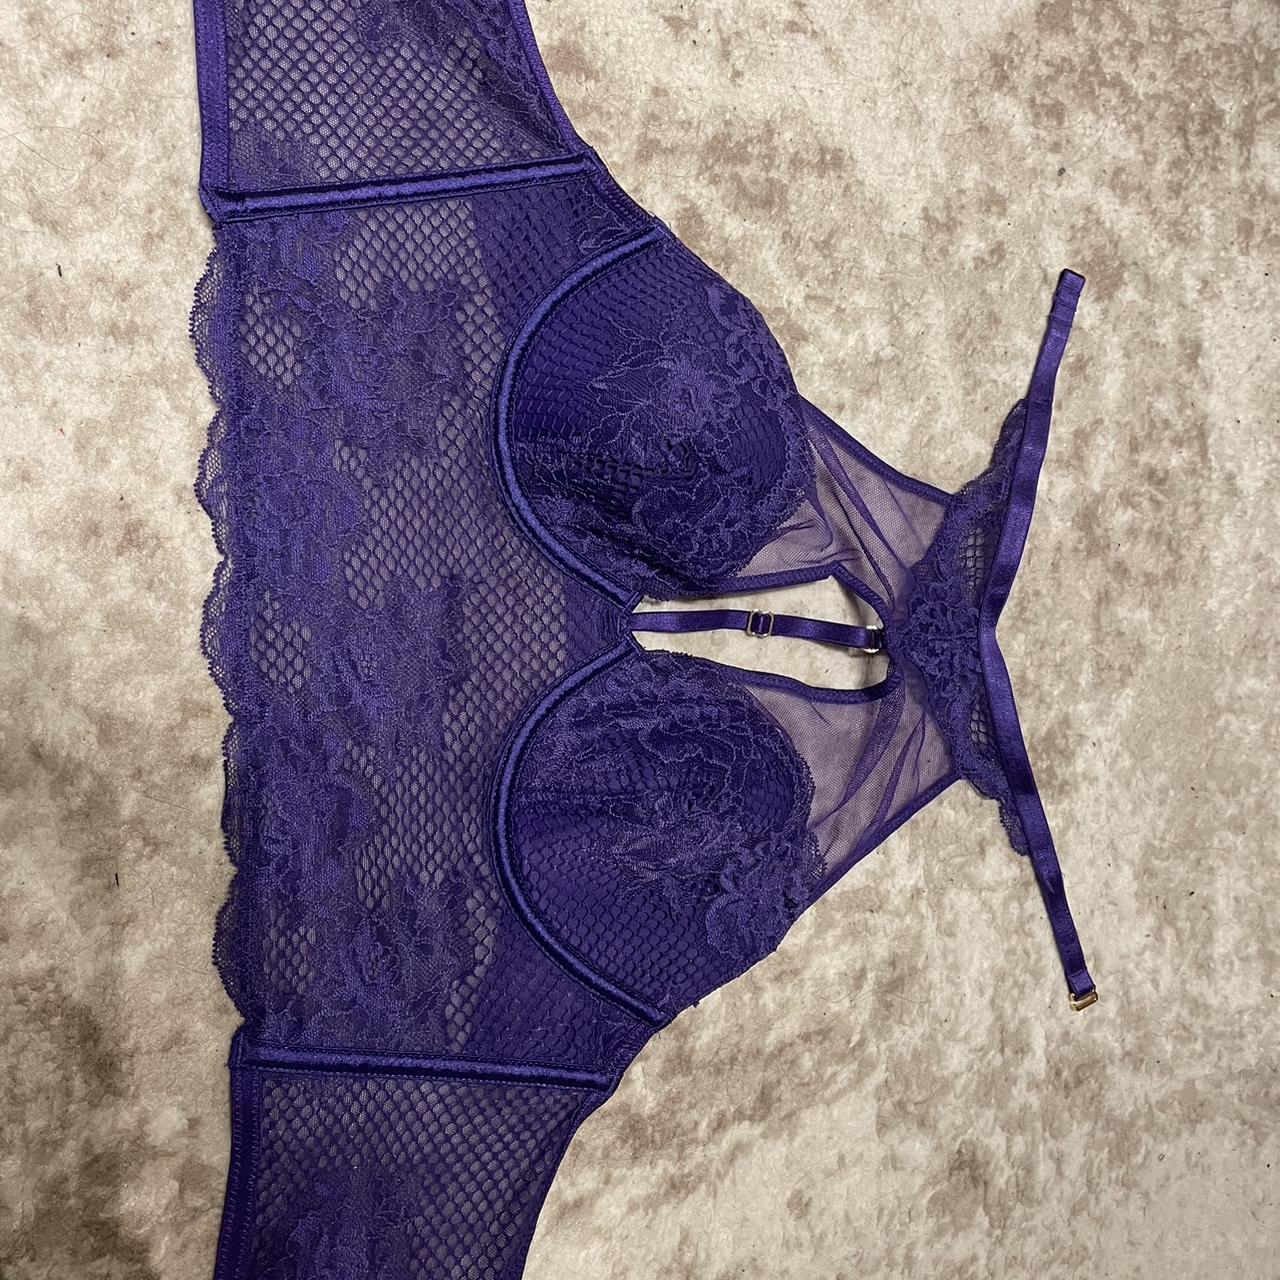 Victoria's Secret Lavender Lace Bra 💗 Size: - Depop